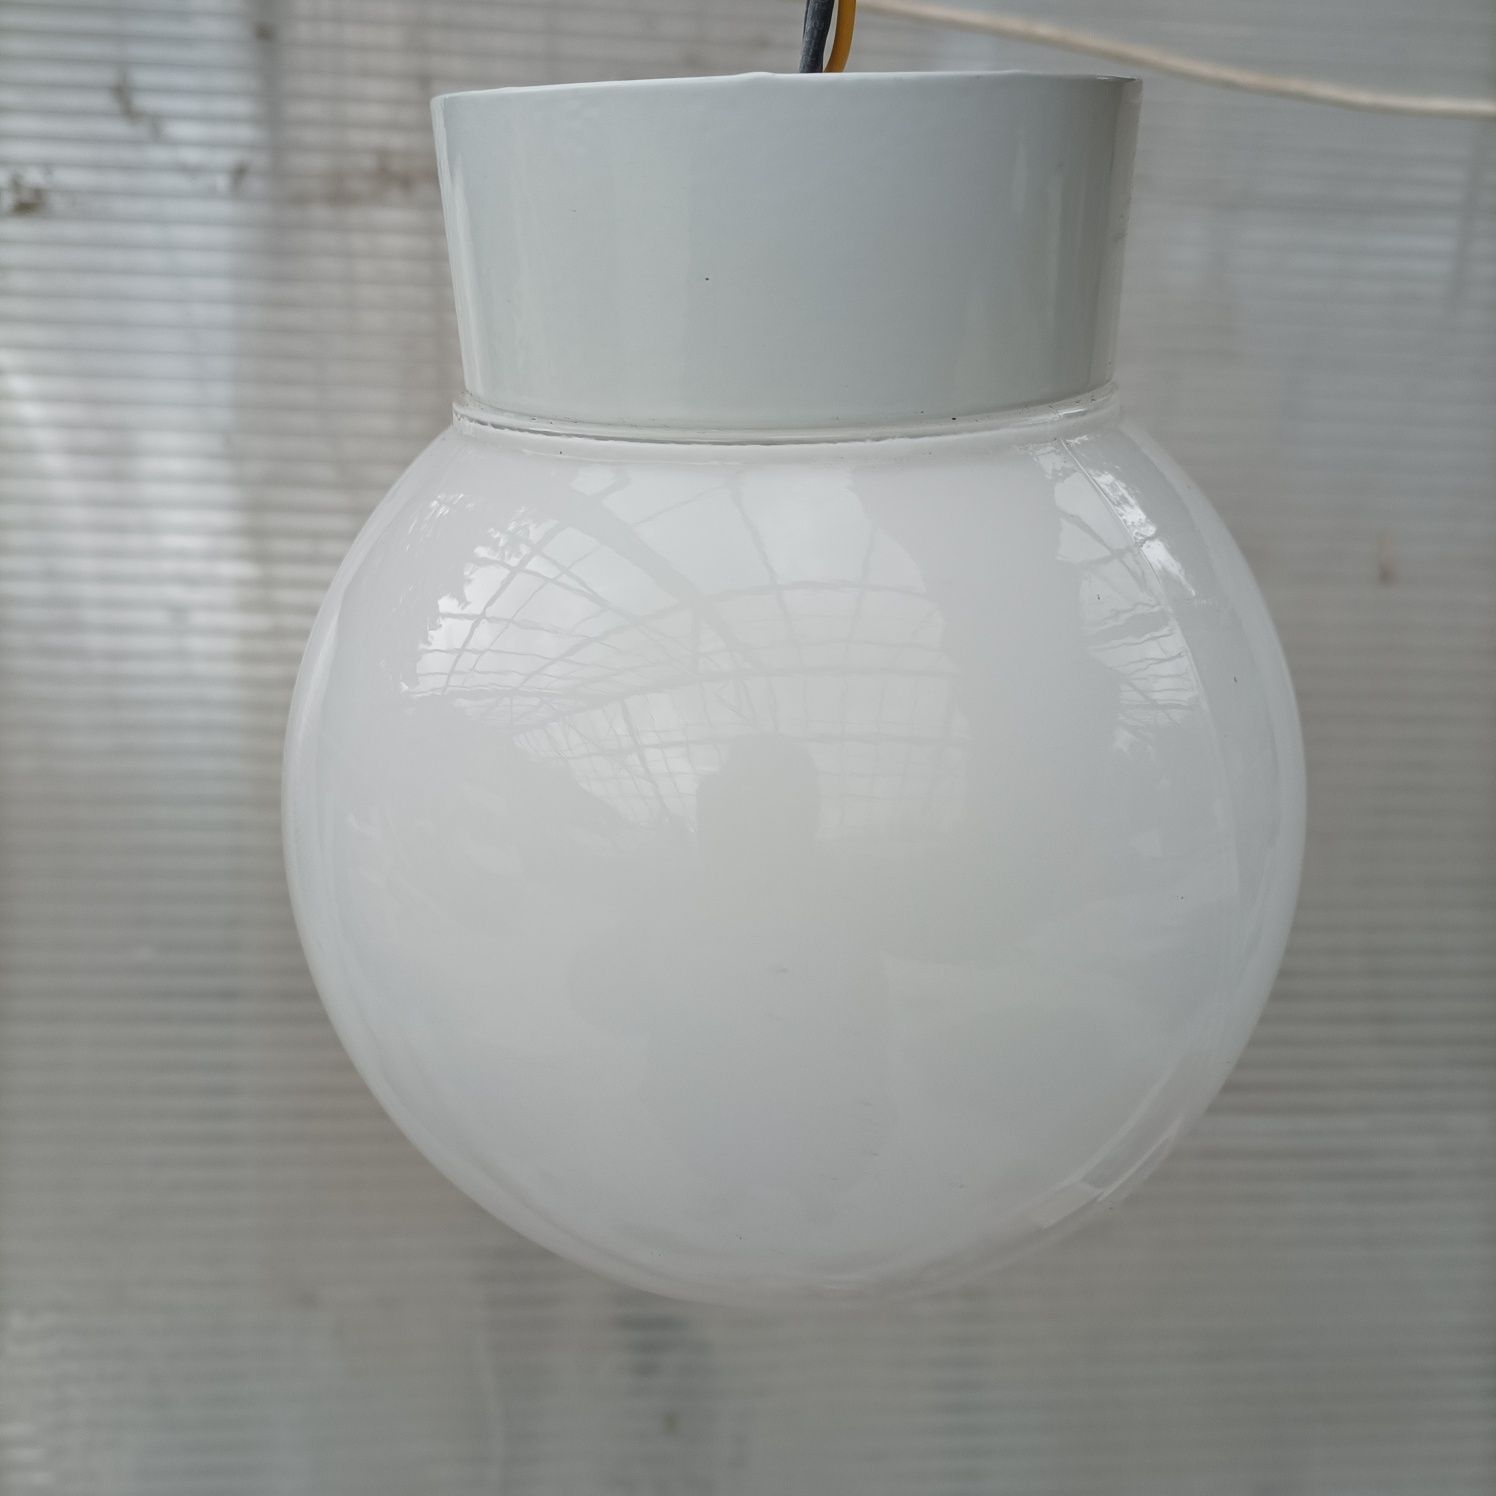 Lampy/ plafony sufitowe stan jak nowe